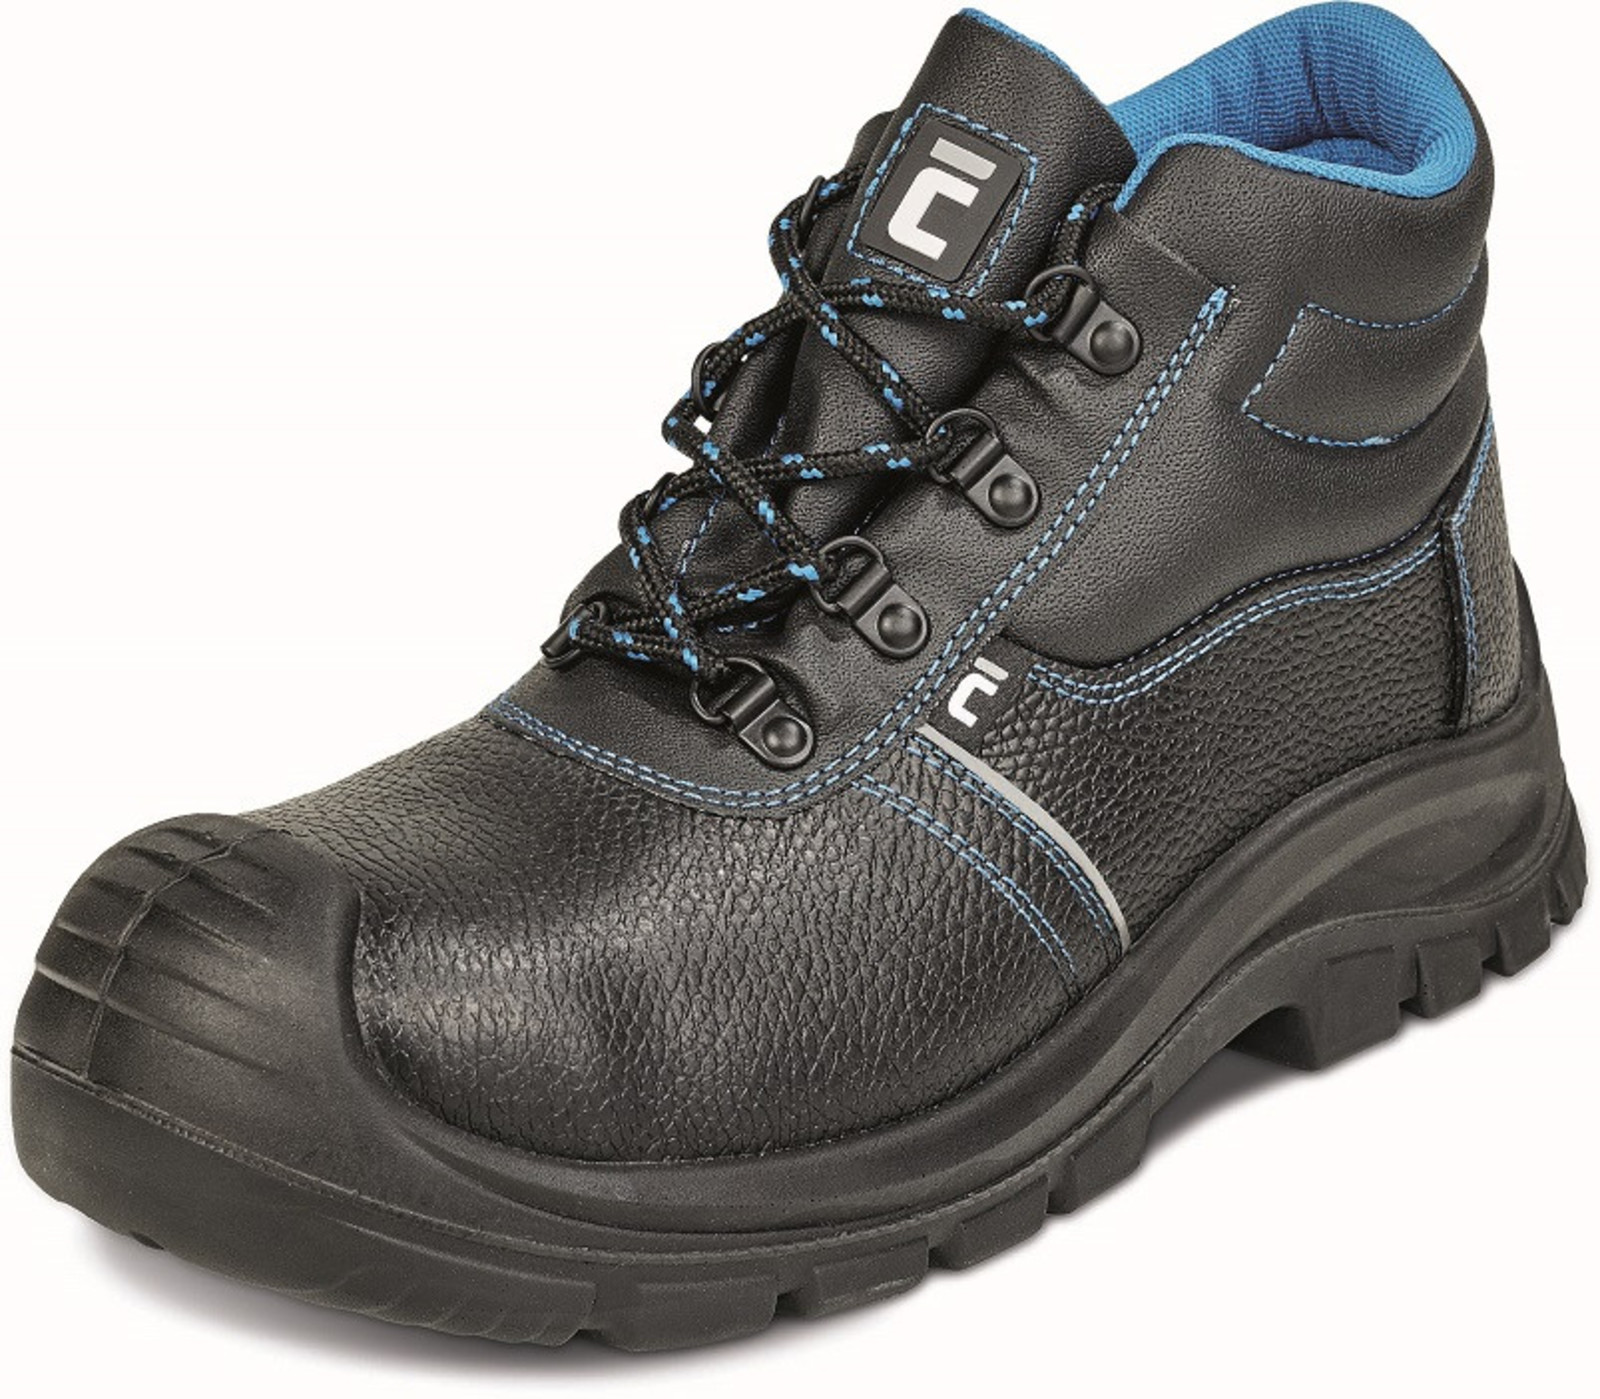 Bezpečnostná obuv Raven XT S3 - veľkosť: 46, farba: čierna